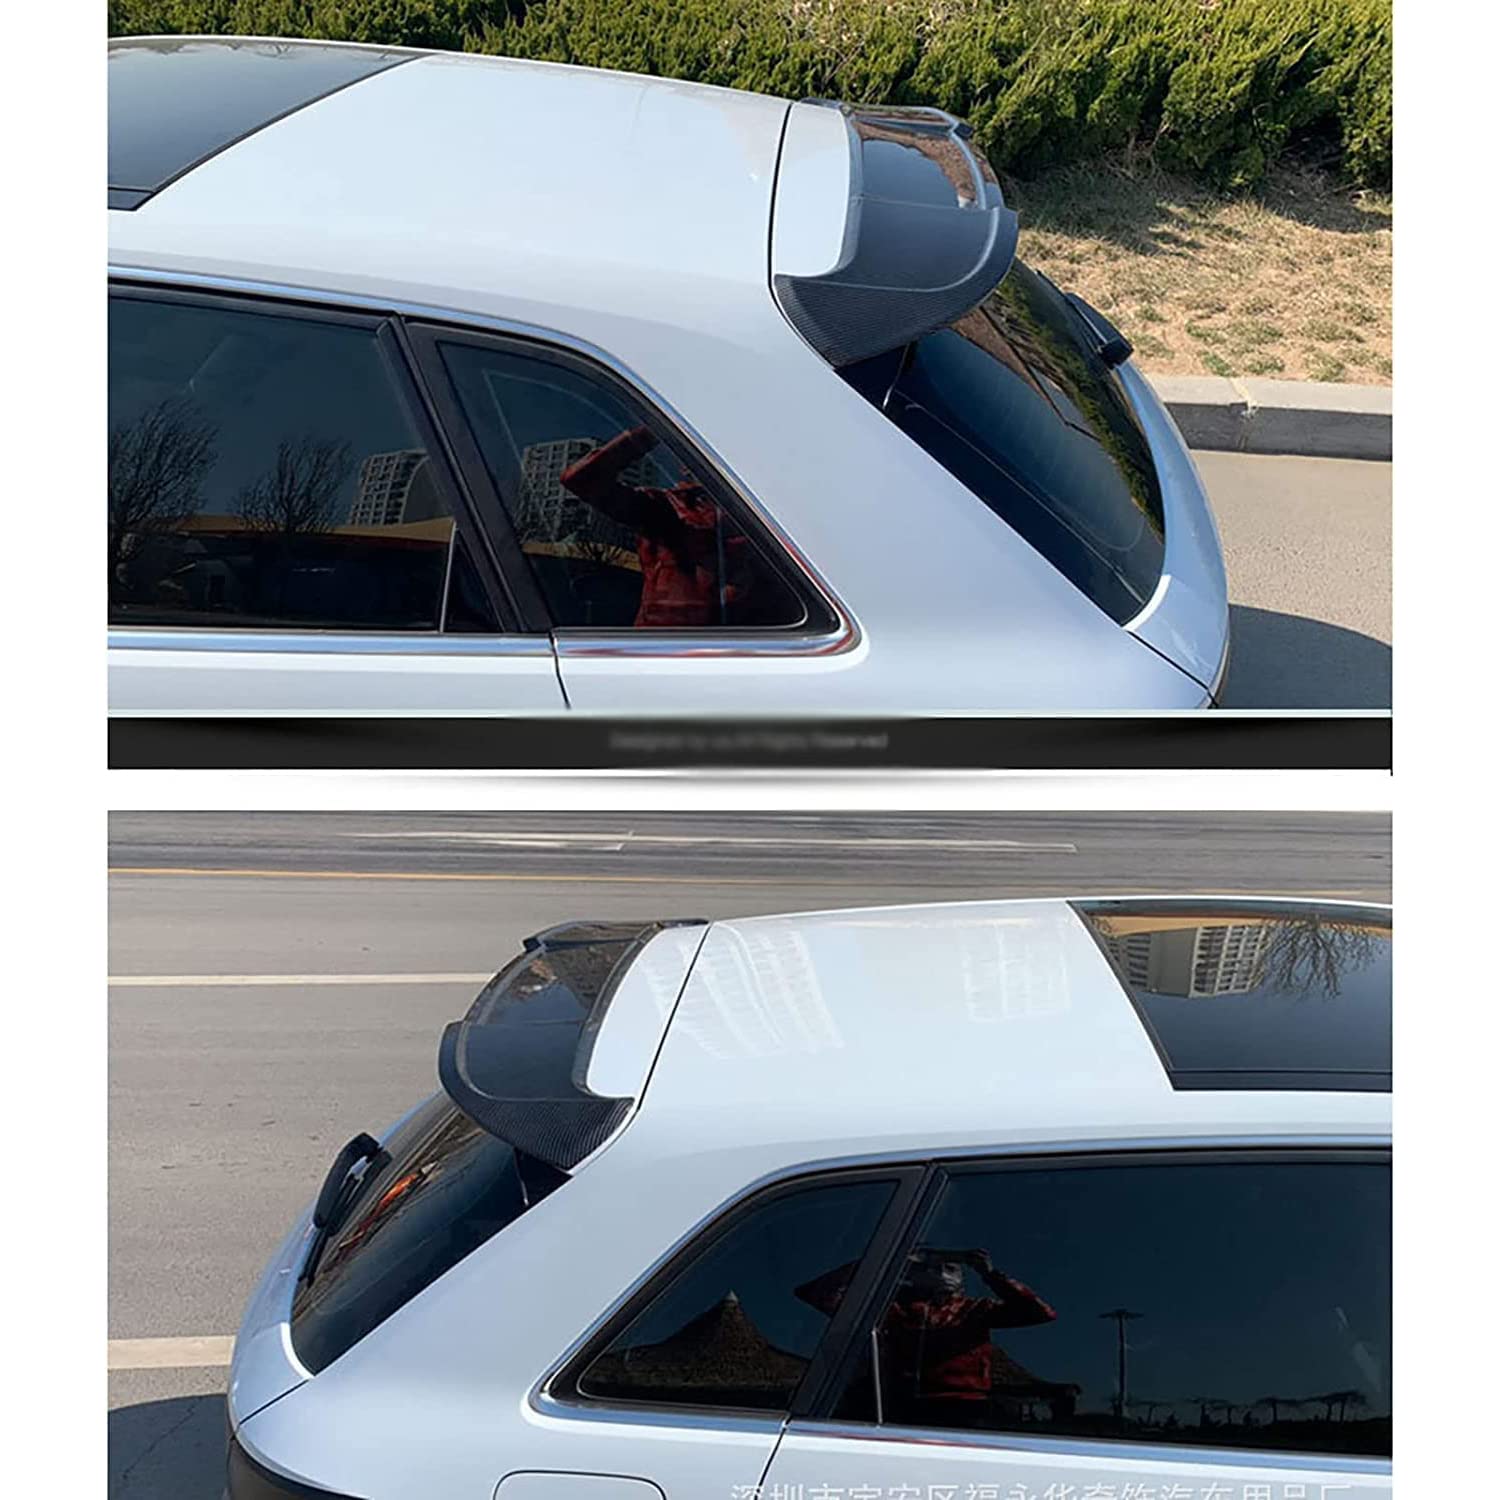 HCKOA Carbon-Fiber Heckspoiler StoßStange Spoiler Heckflügel Auto Modifikation Styling Zubehör, für Audi a4 b8 2009-2016 von HCKOA